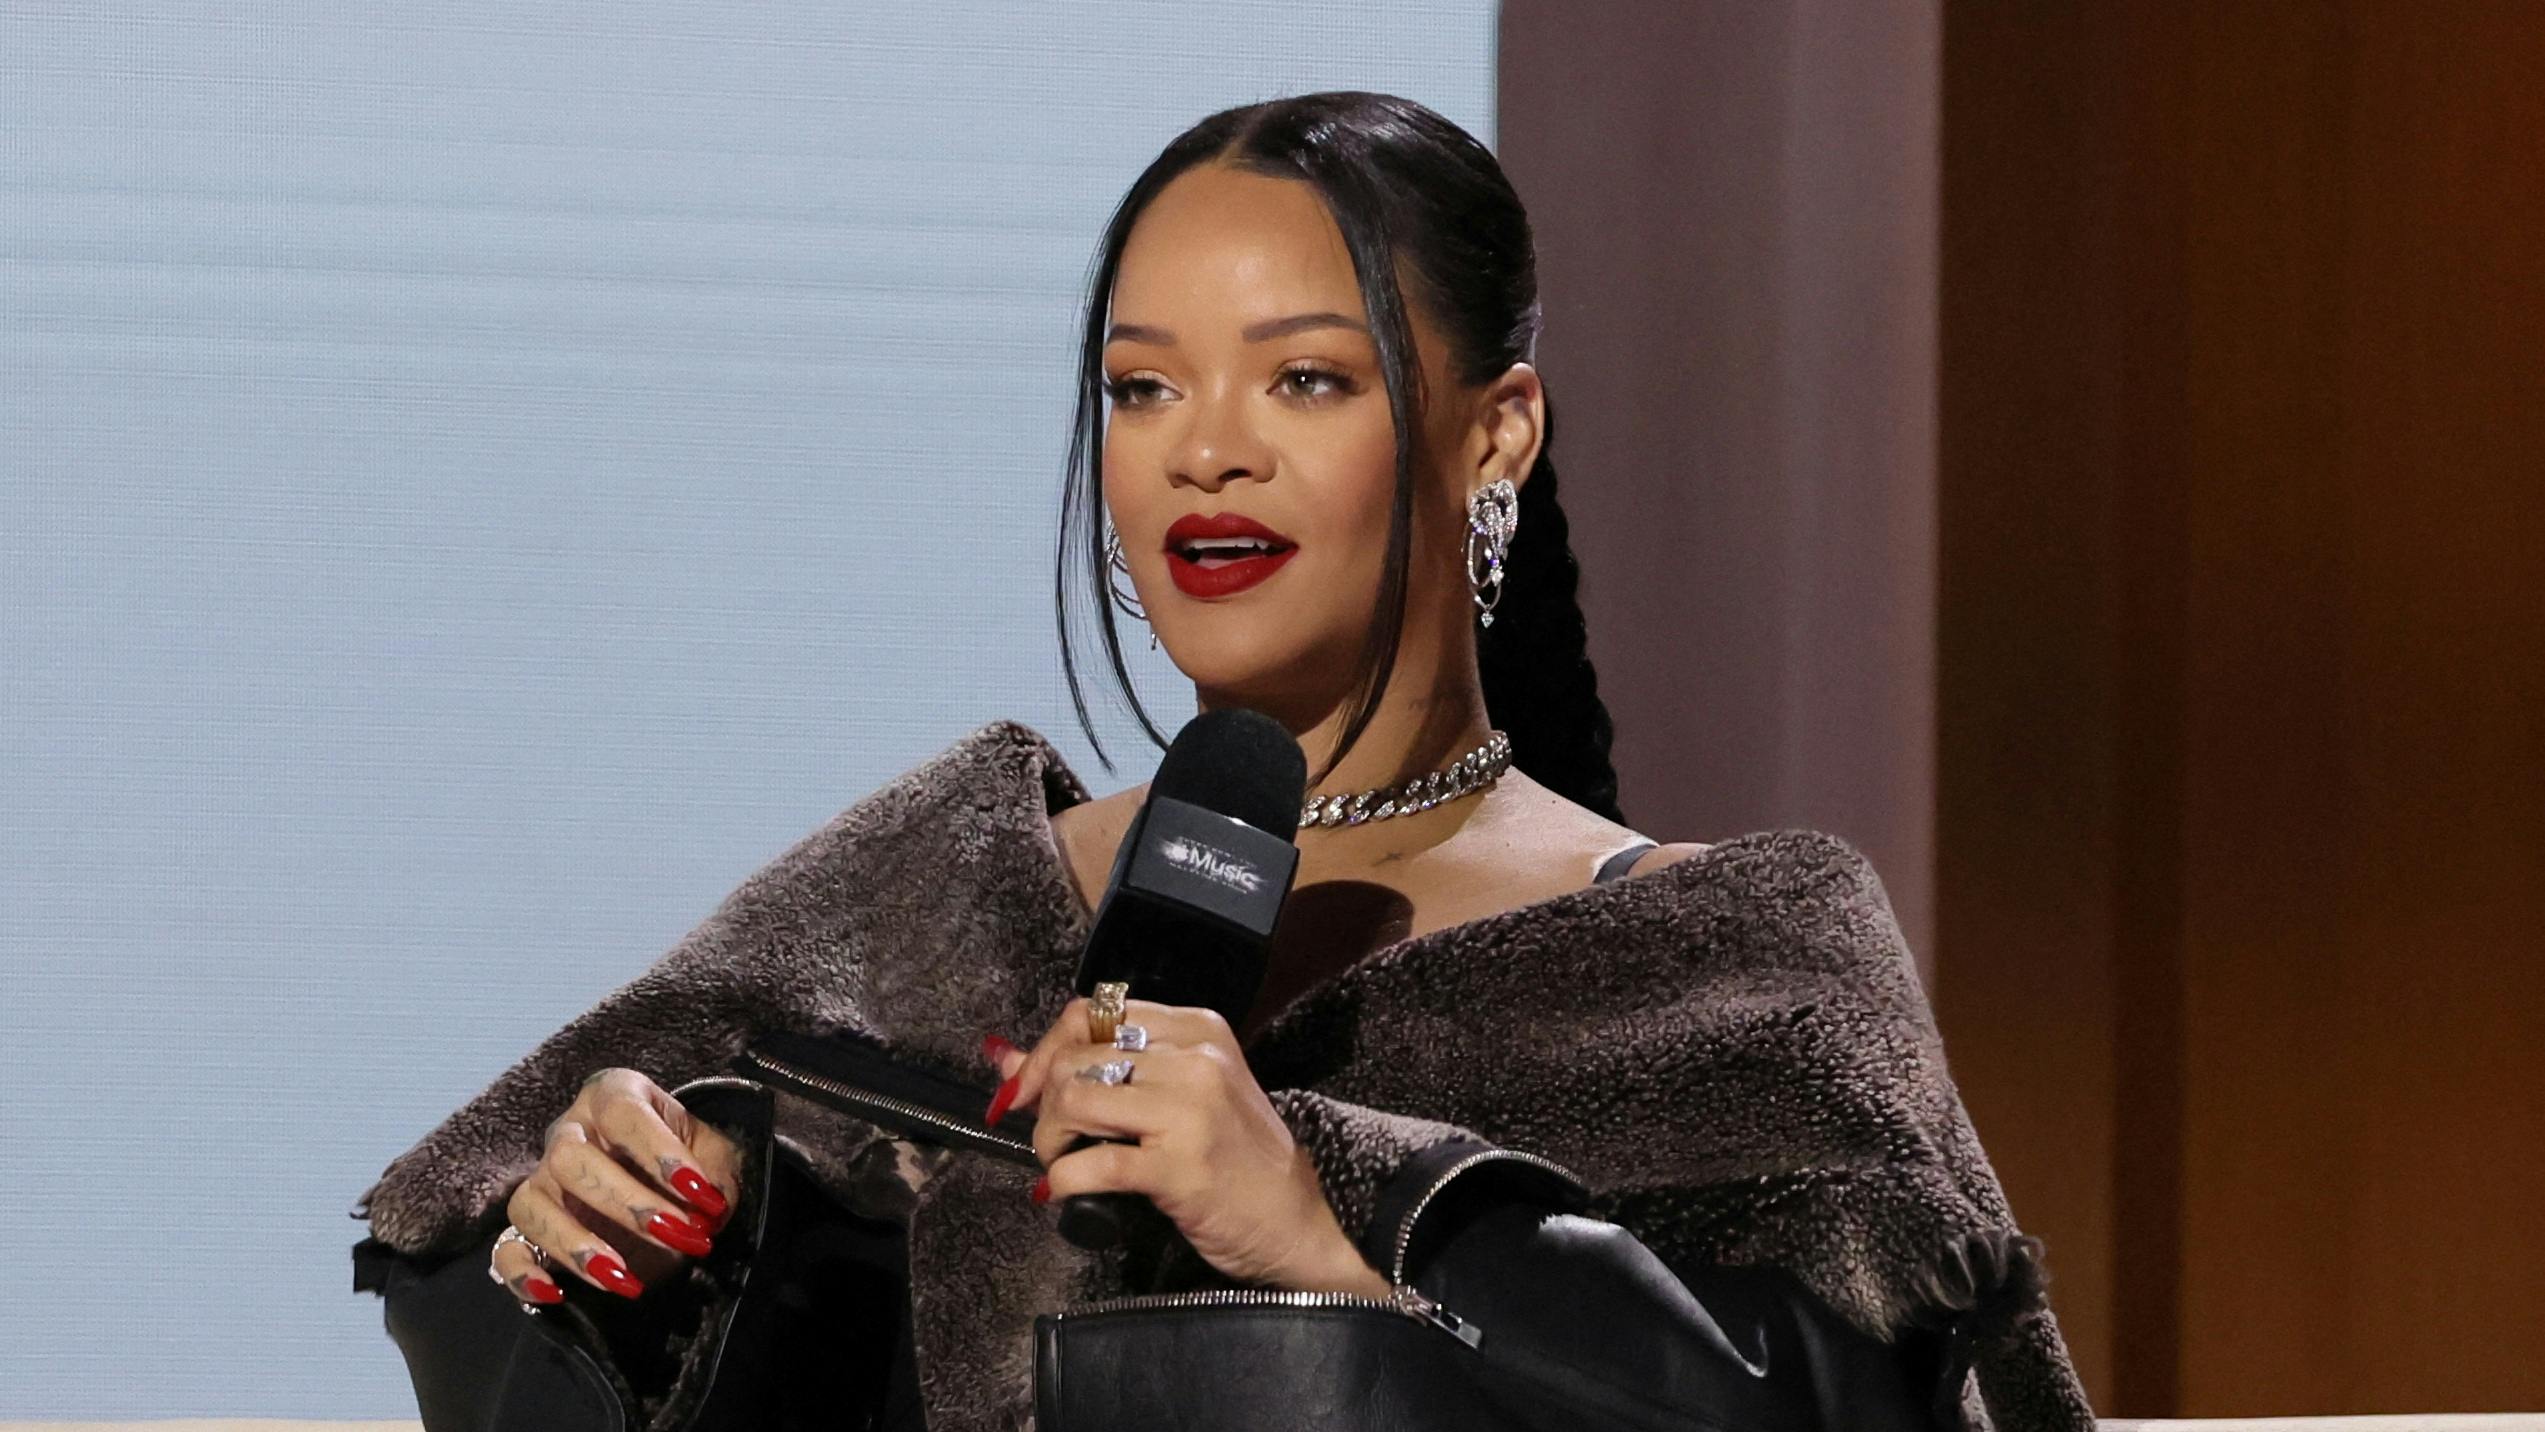 Der var i den grad tænkt over detaljerne, da Rihanna til årets Super Bowl halftime-show afslørede, at hun venter barn nummer to.
